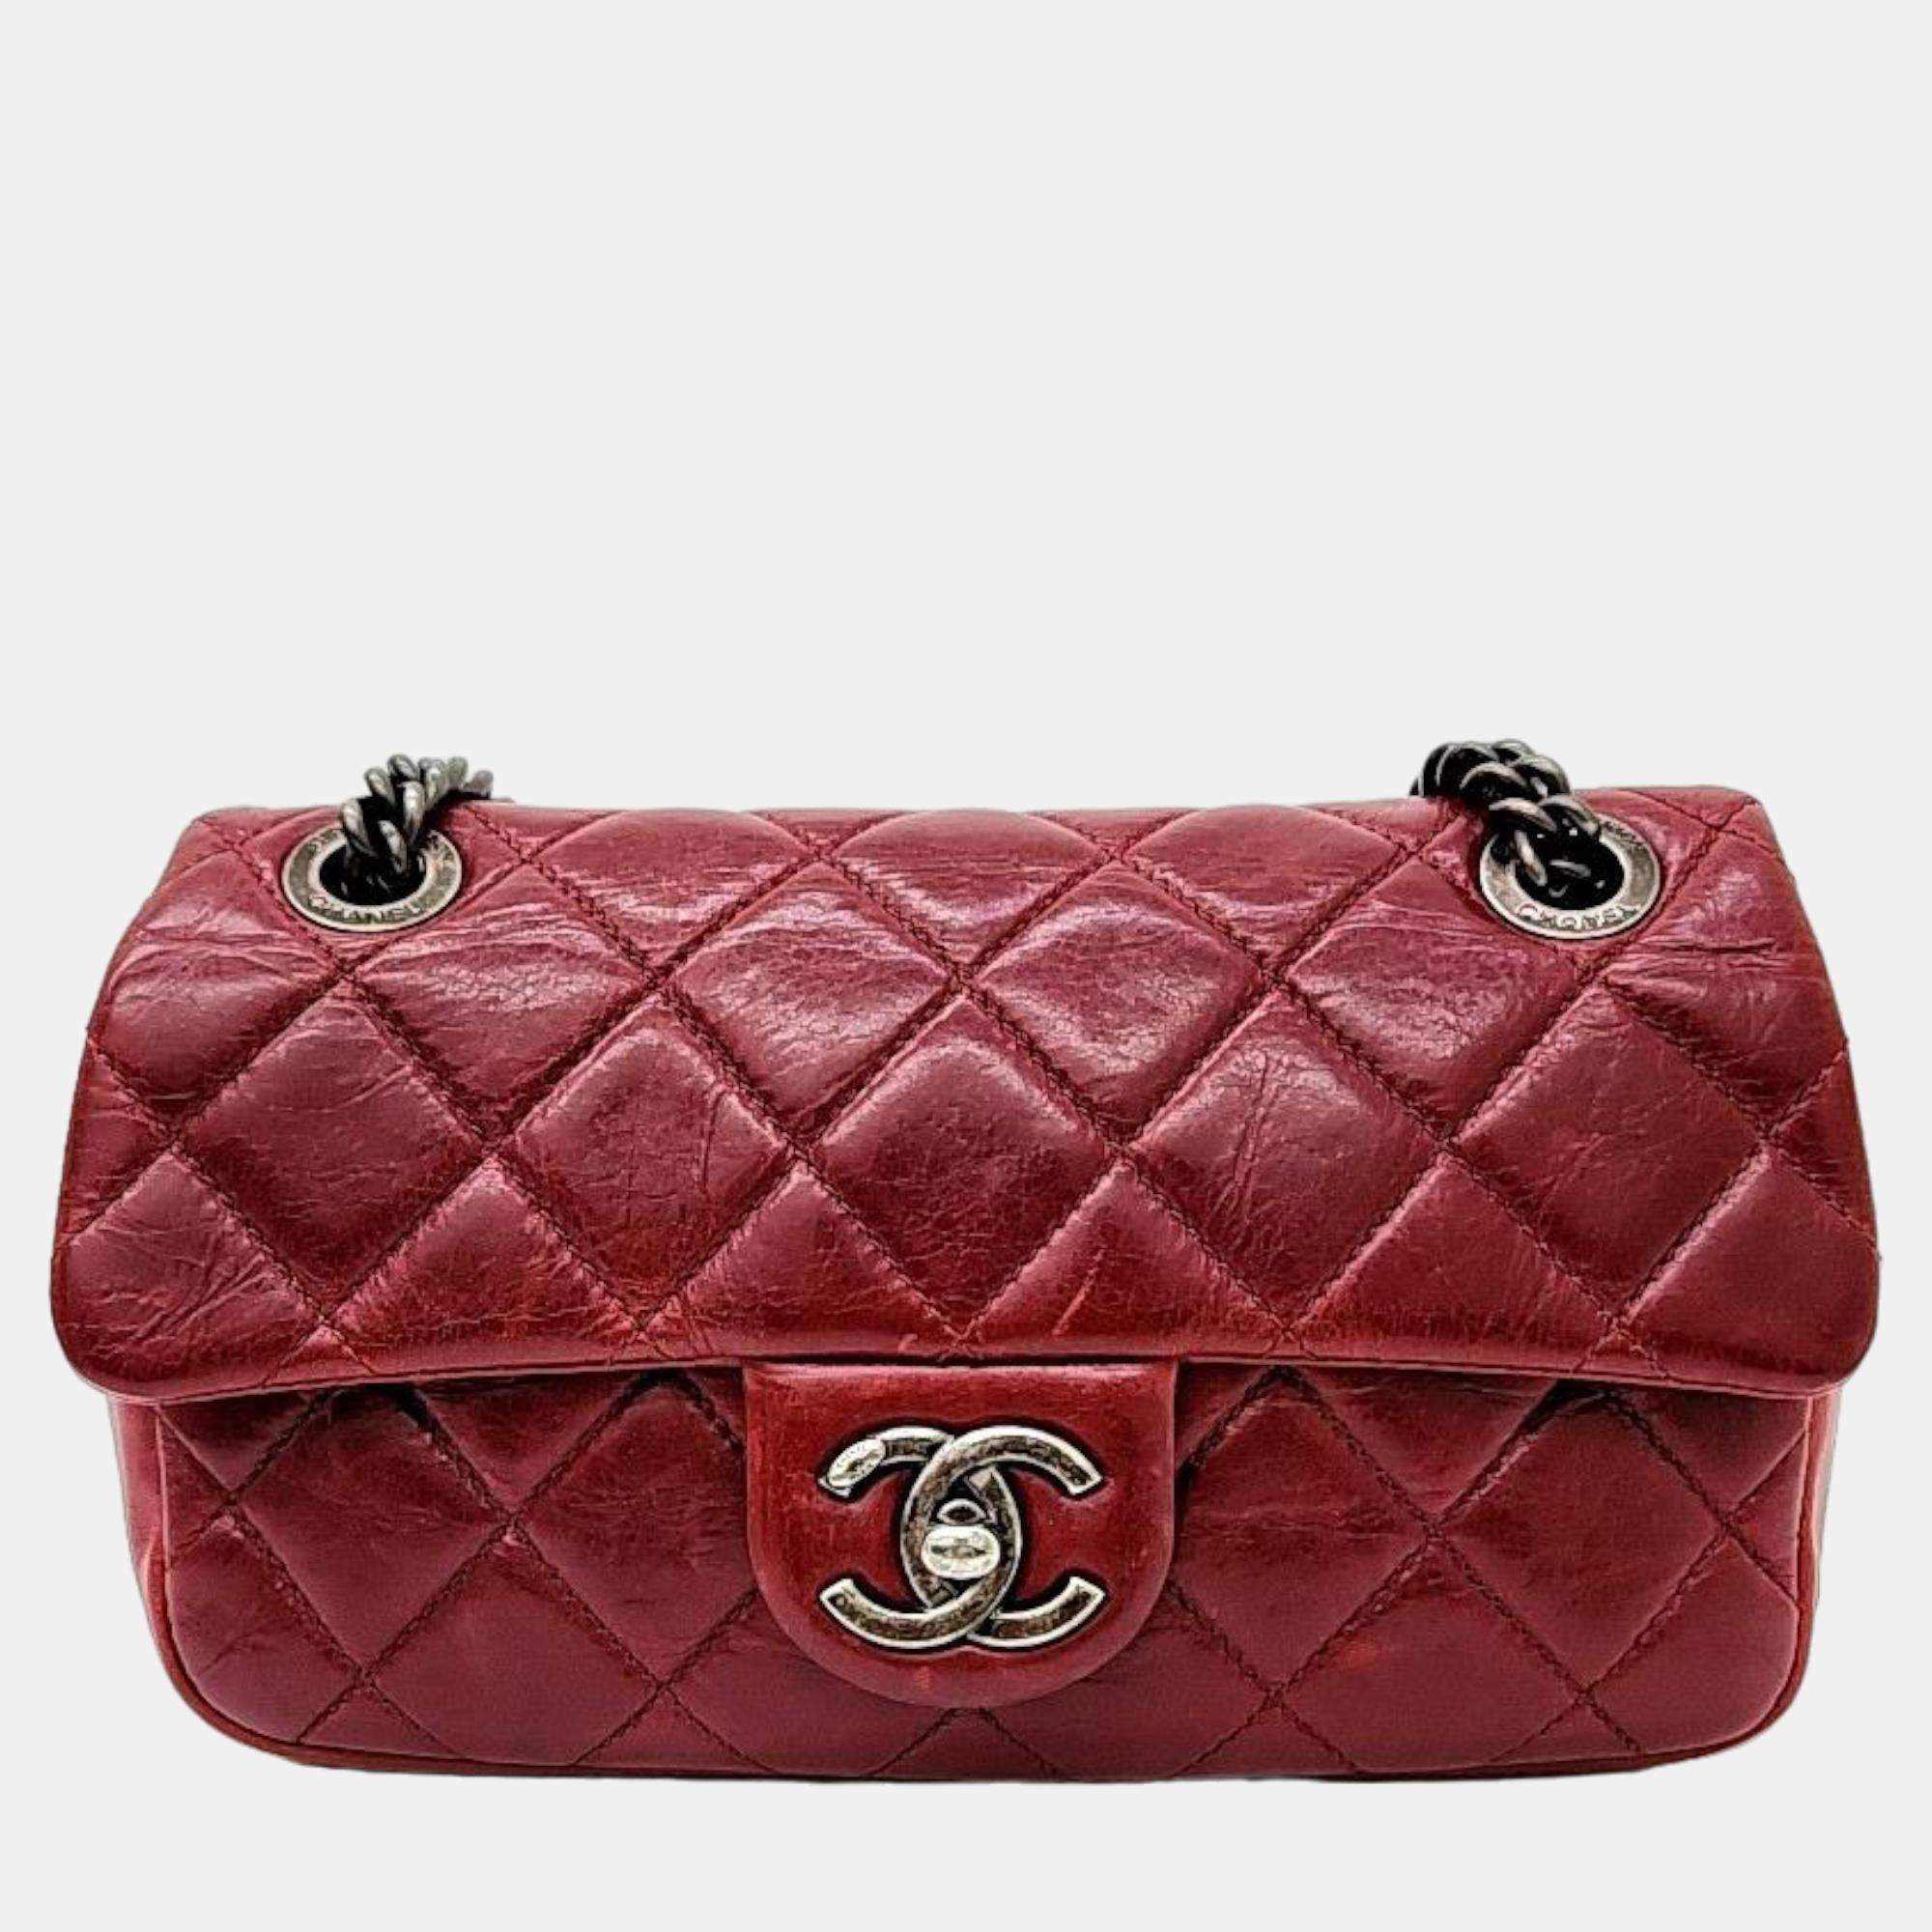 Chanel Red Leather vintage chain shoulder bag Chanel